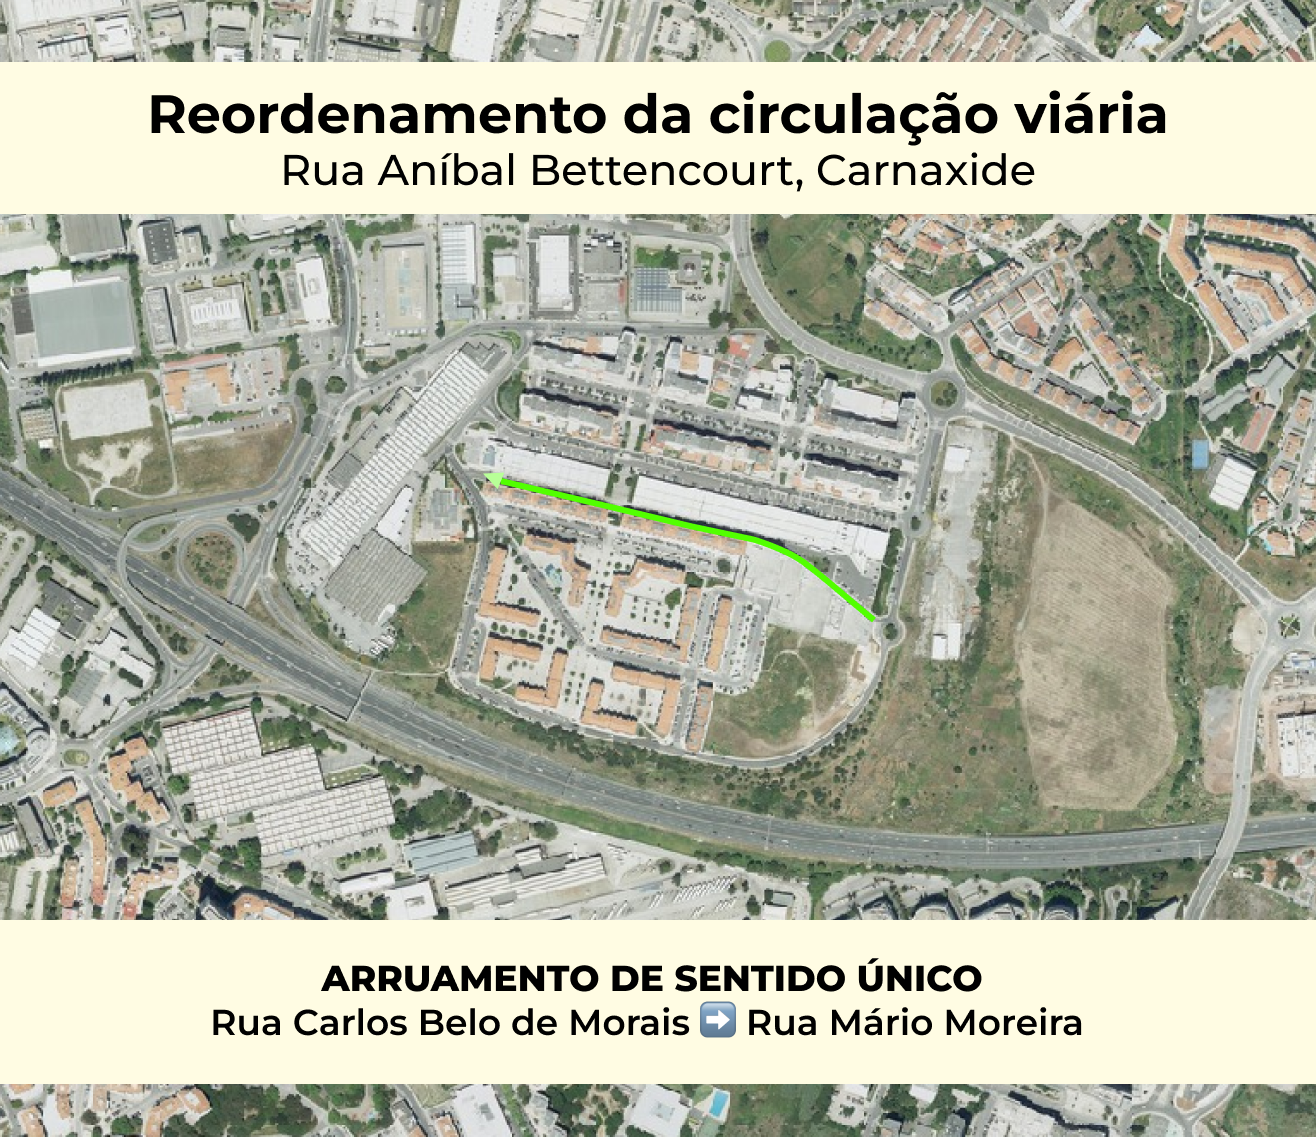 Imagem google maps da Rua Aníbal Bettencourt